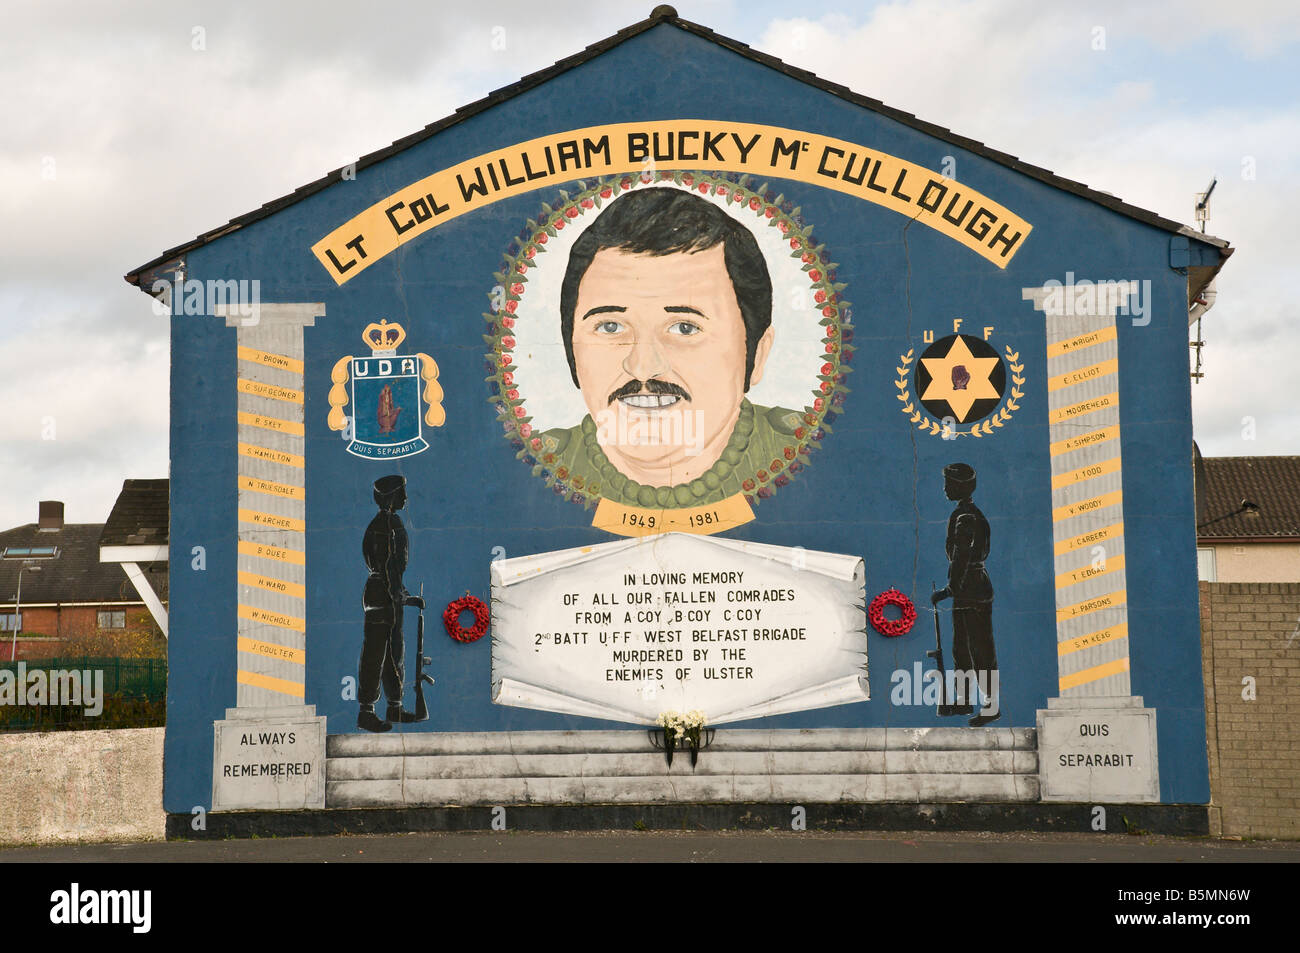 Lealisti/unionista, murale 'Lt Col William Bucky McCullough' Foto Stock